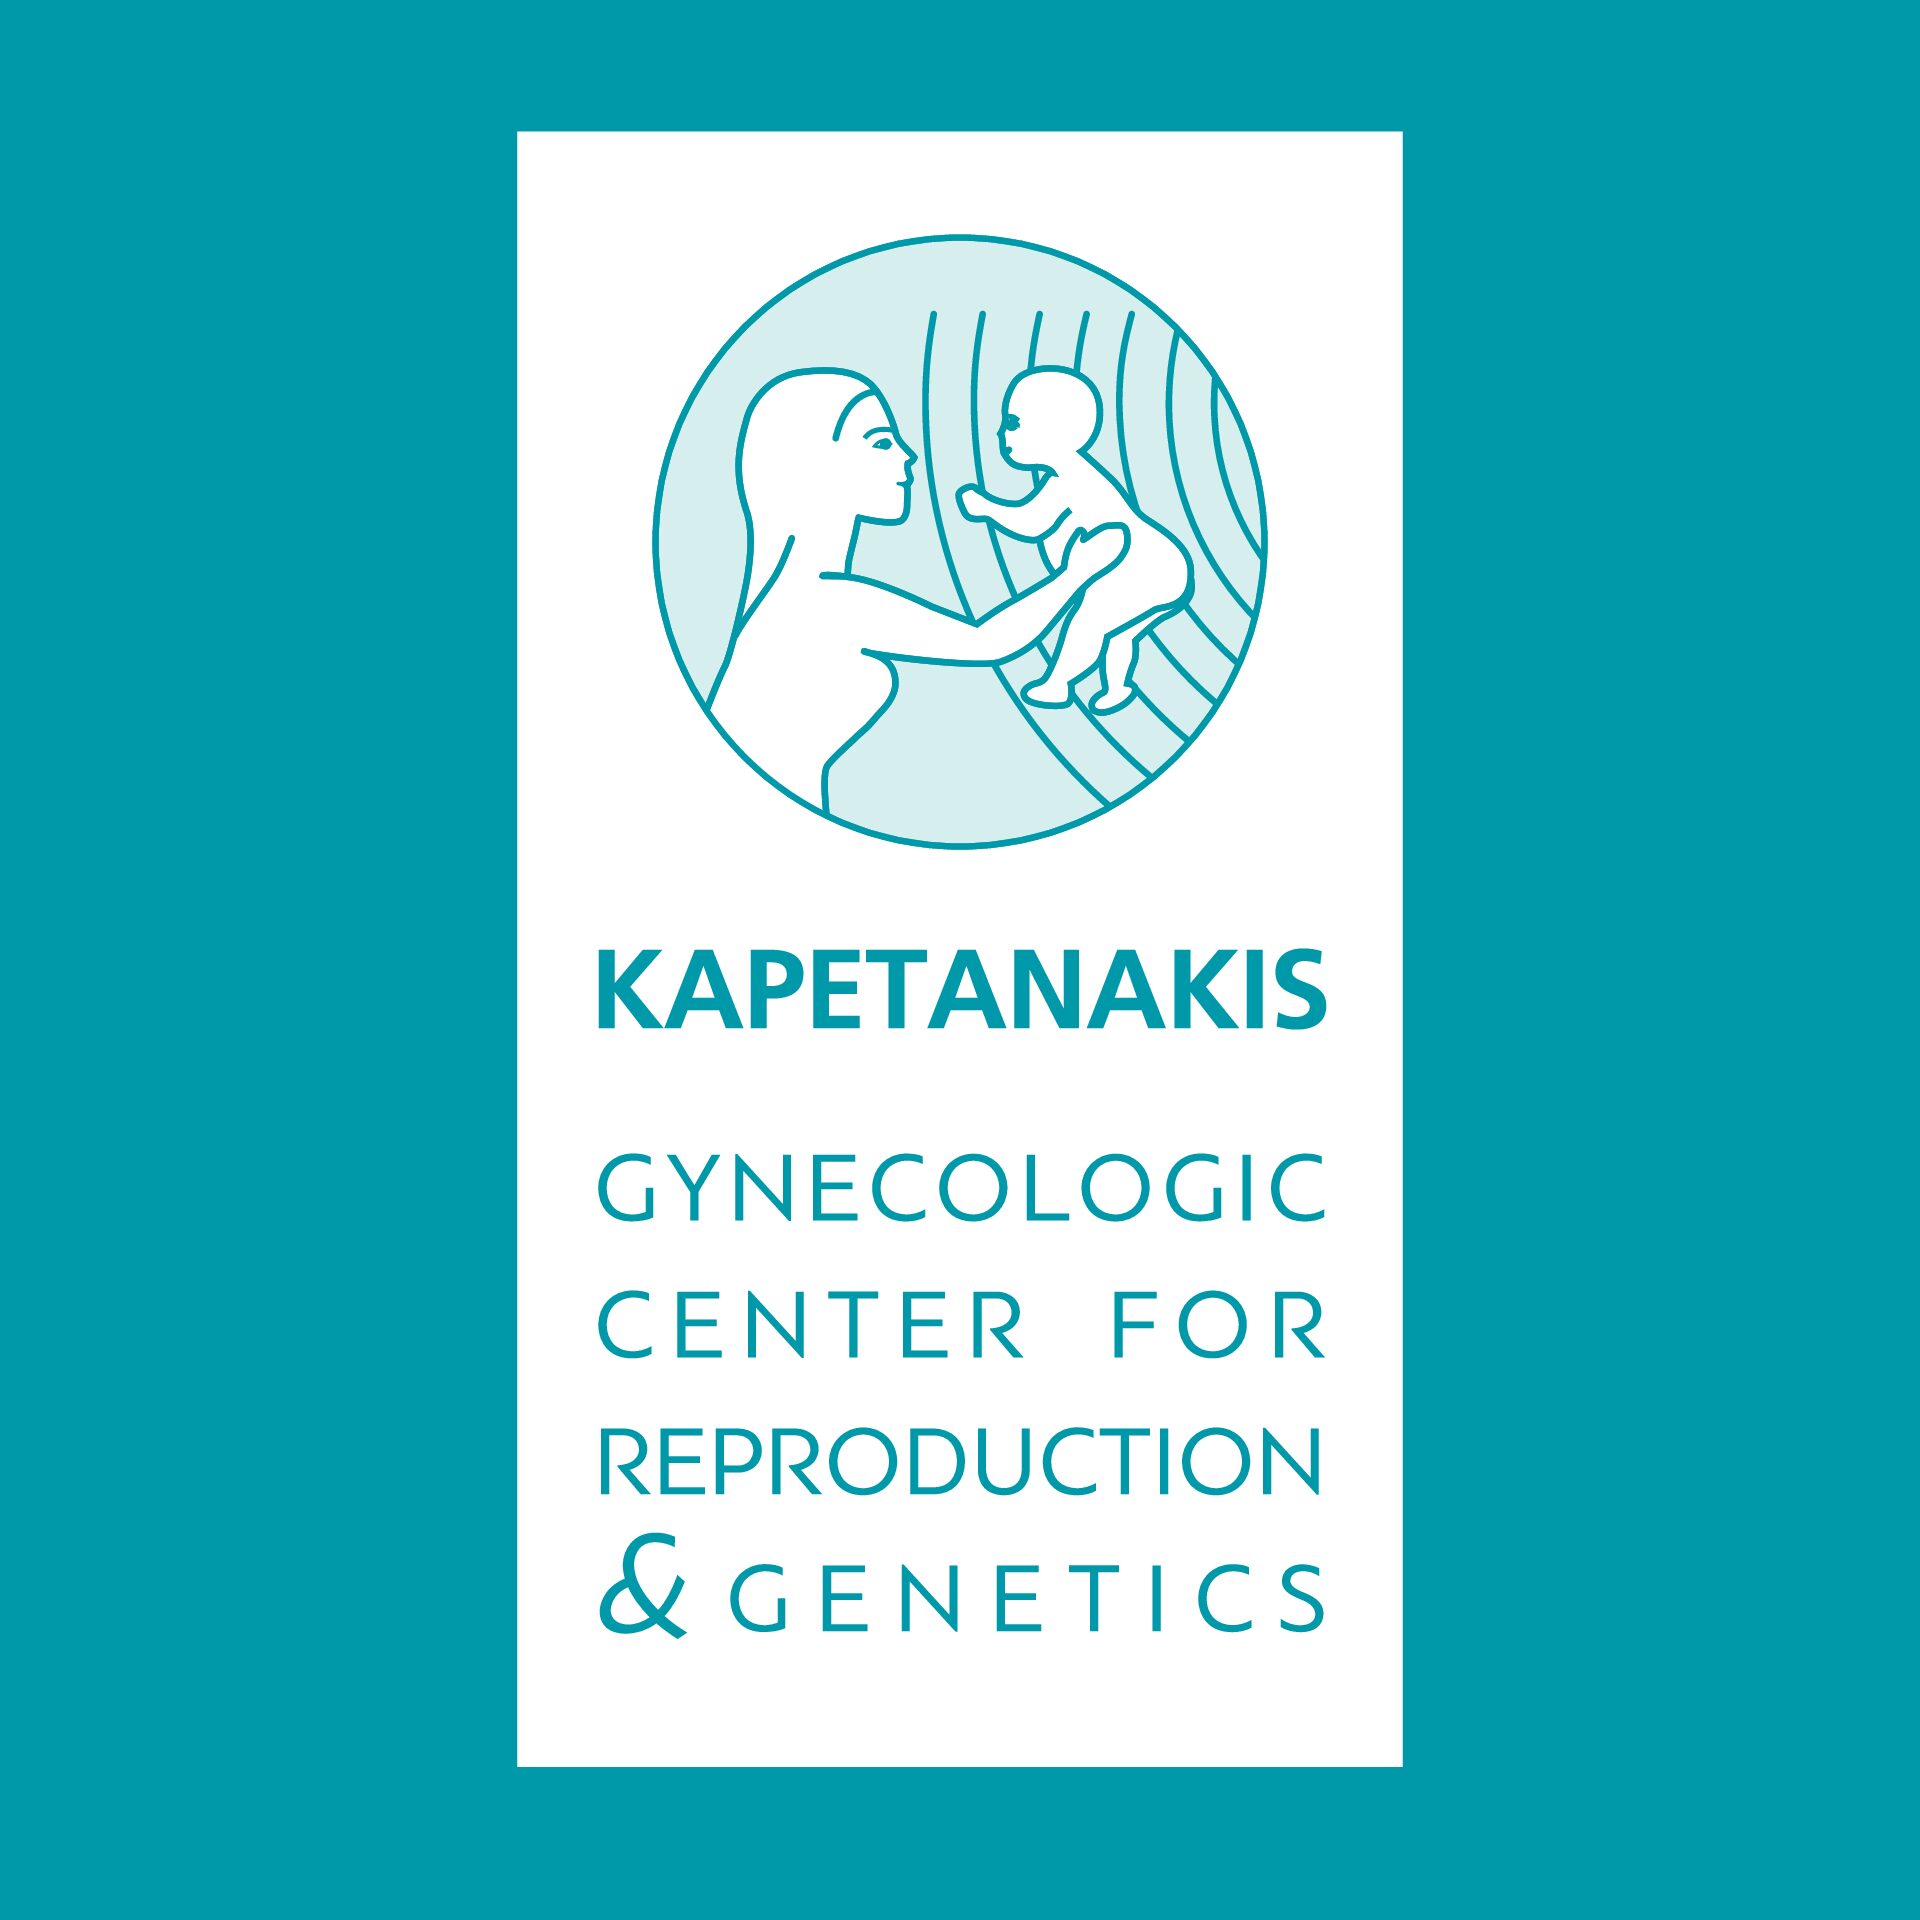 Kapetanakis Gynecologic Center for Reproduction and Genetics